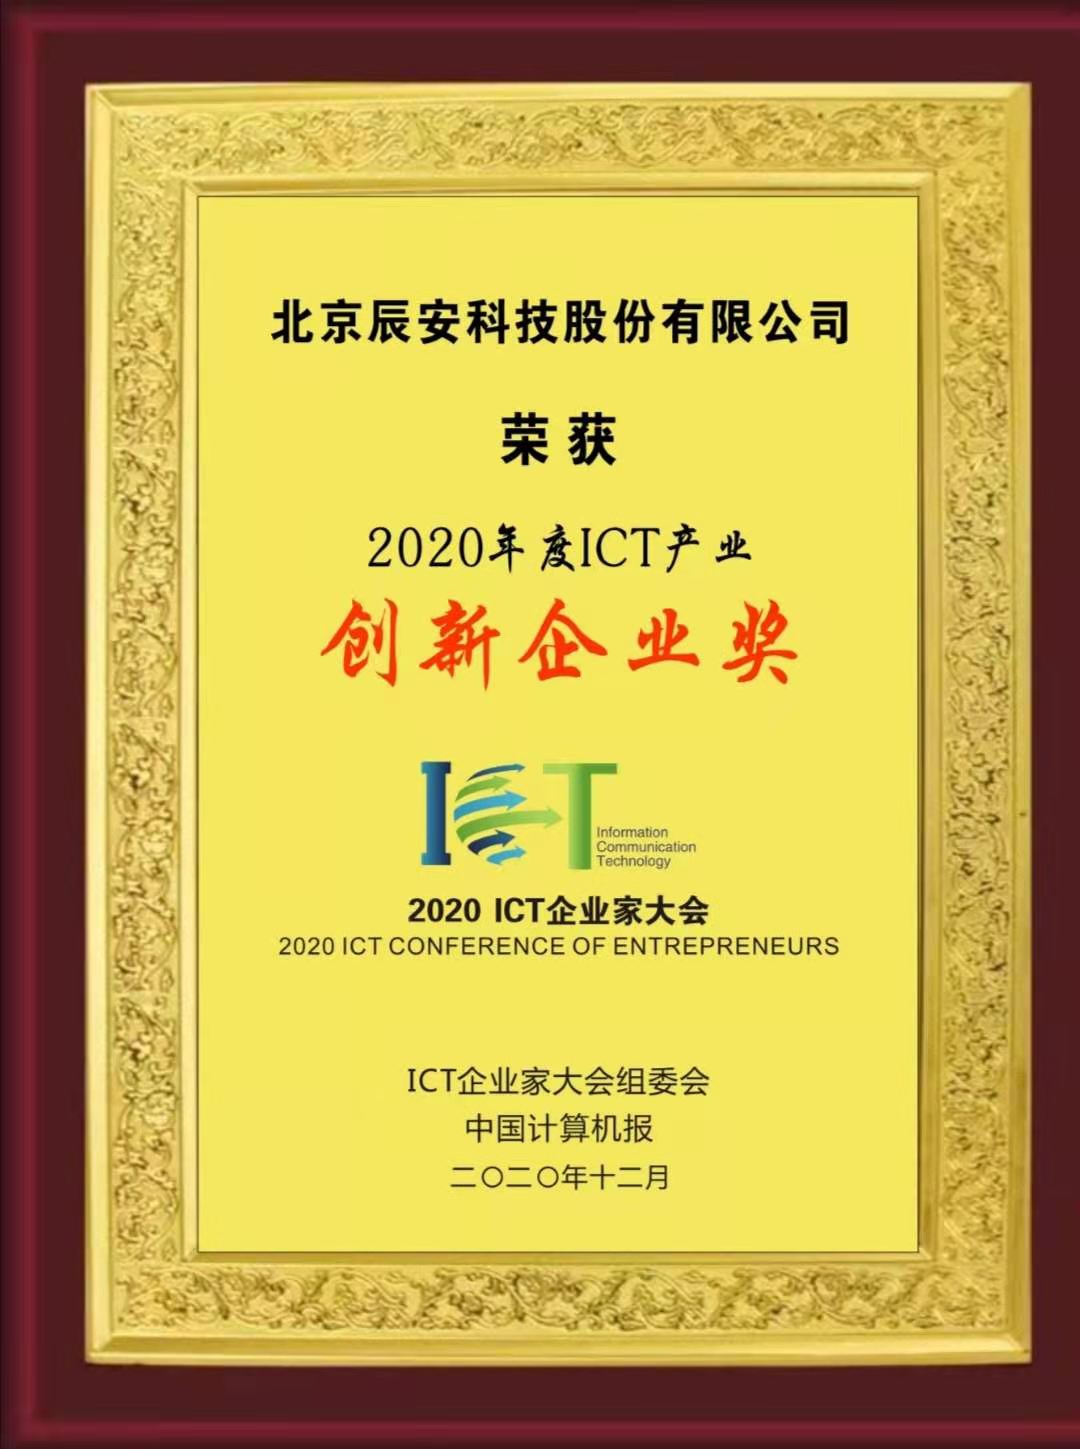 辰安科技荣获“2020年度ICT产业创新企业奖”